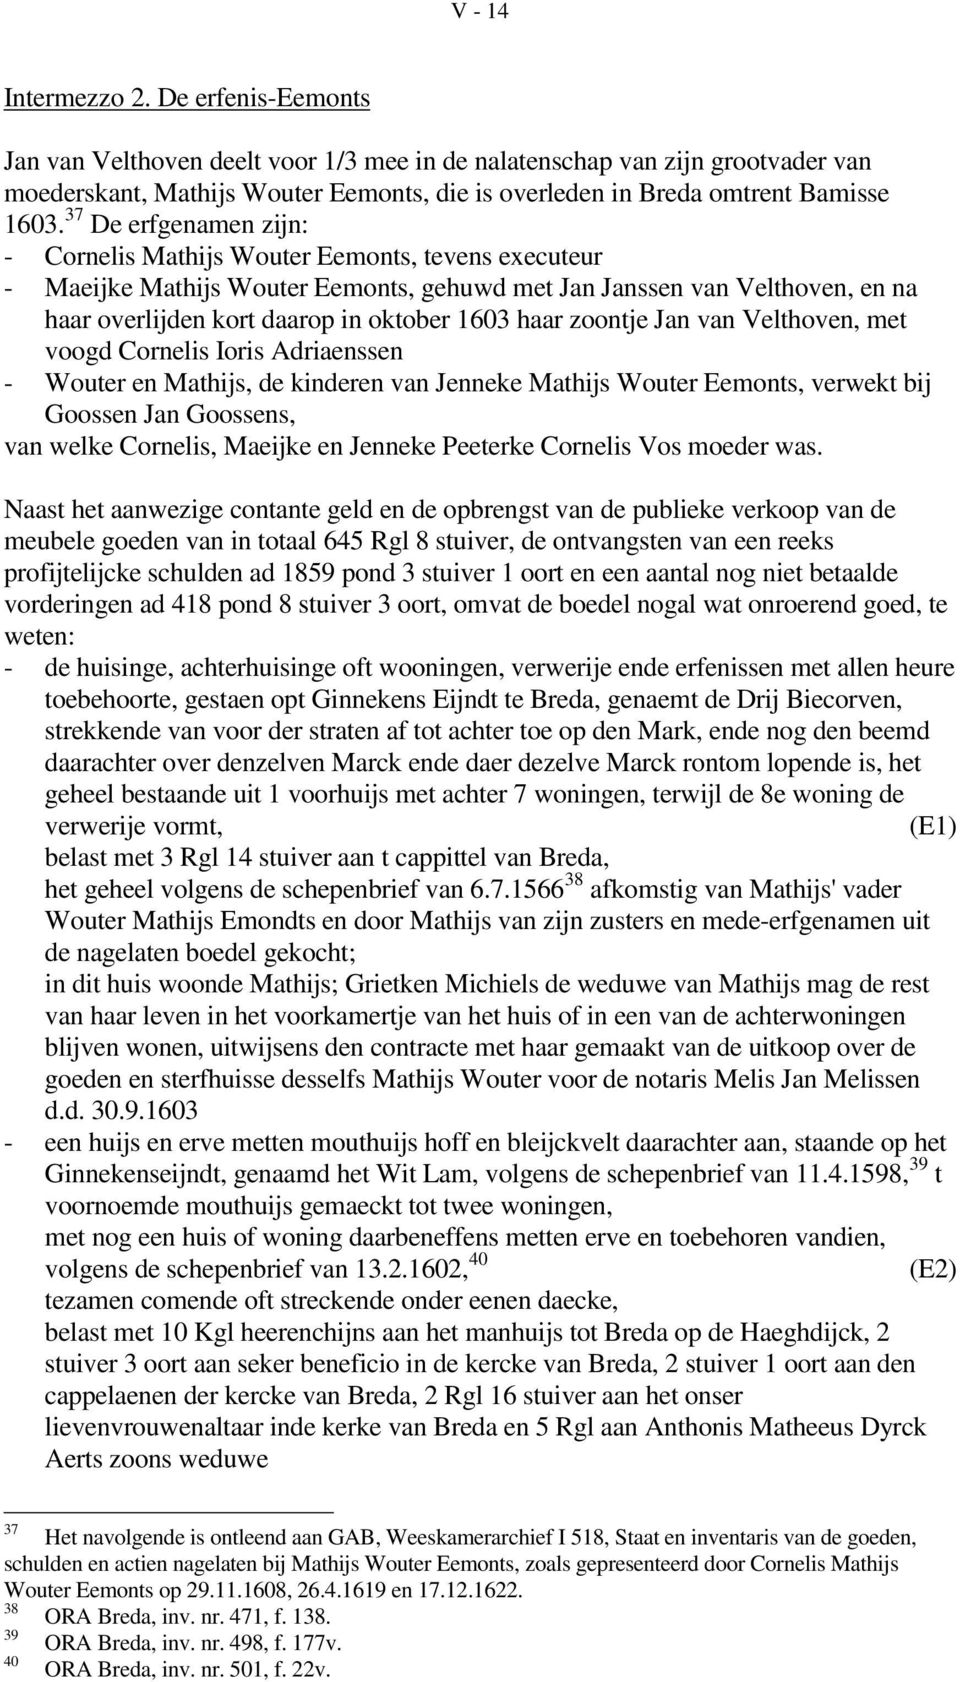 37 De erfgenamen zijn: - Cornelis Mathijs Wouter Eemonts, tevens executeur - Maeijke Mathijs Wouter Eemonts, gehuwd met Jan Janssen van Velthoven, en na haar overlijden kort daarop in oktober 1603